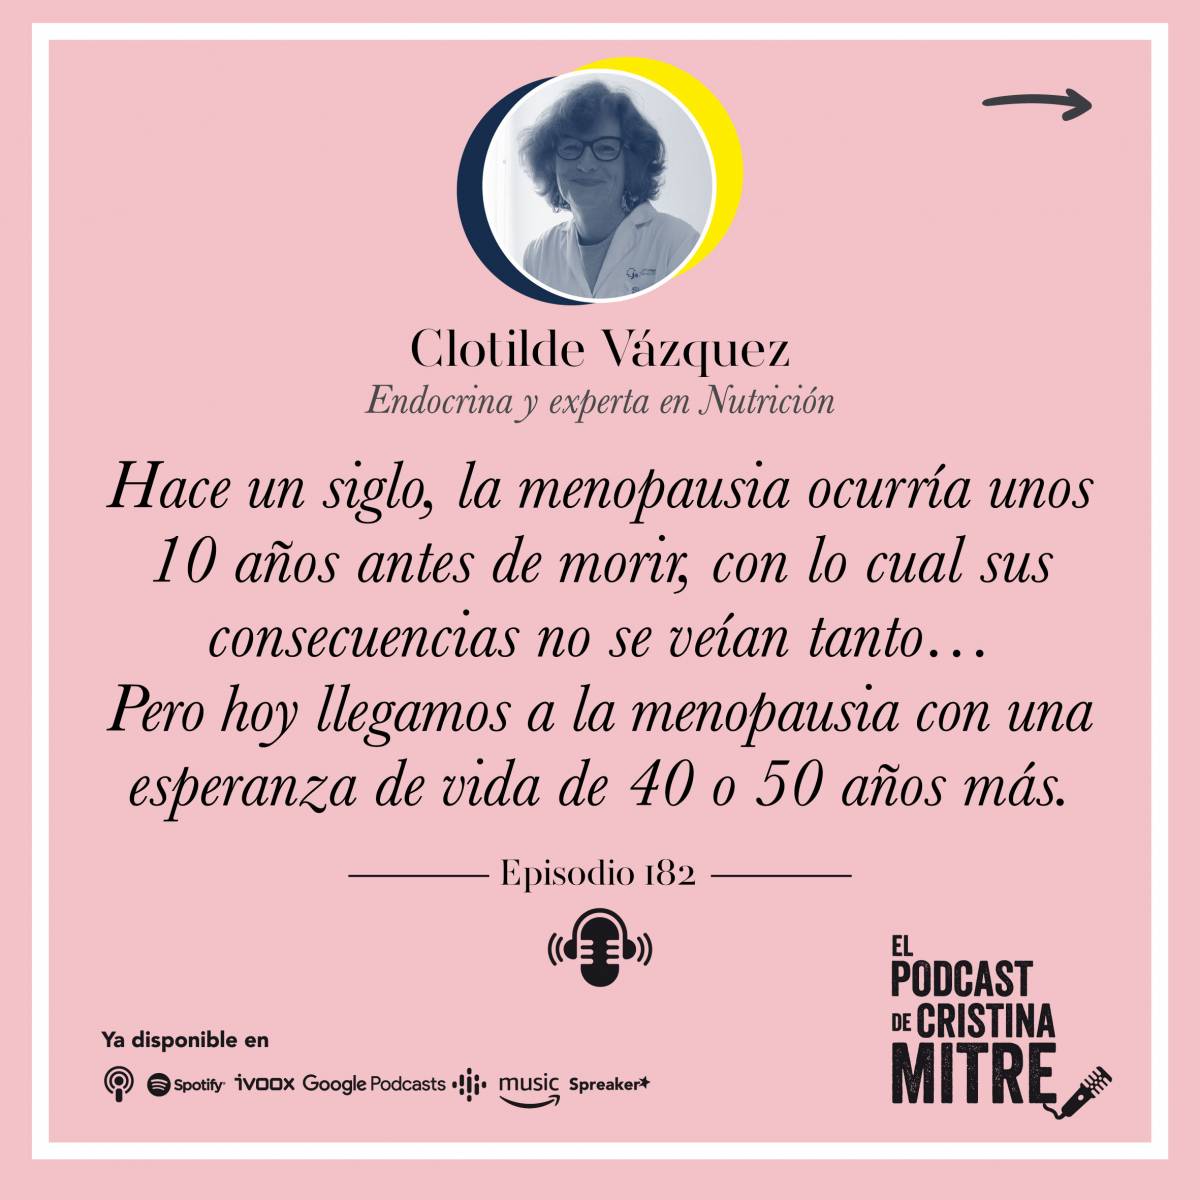 El podcast de Cristina Mitre Clotilde Vázquez Perimenopausia menopausia